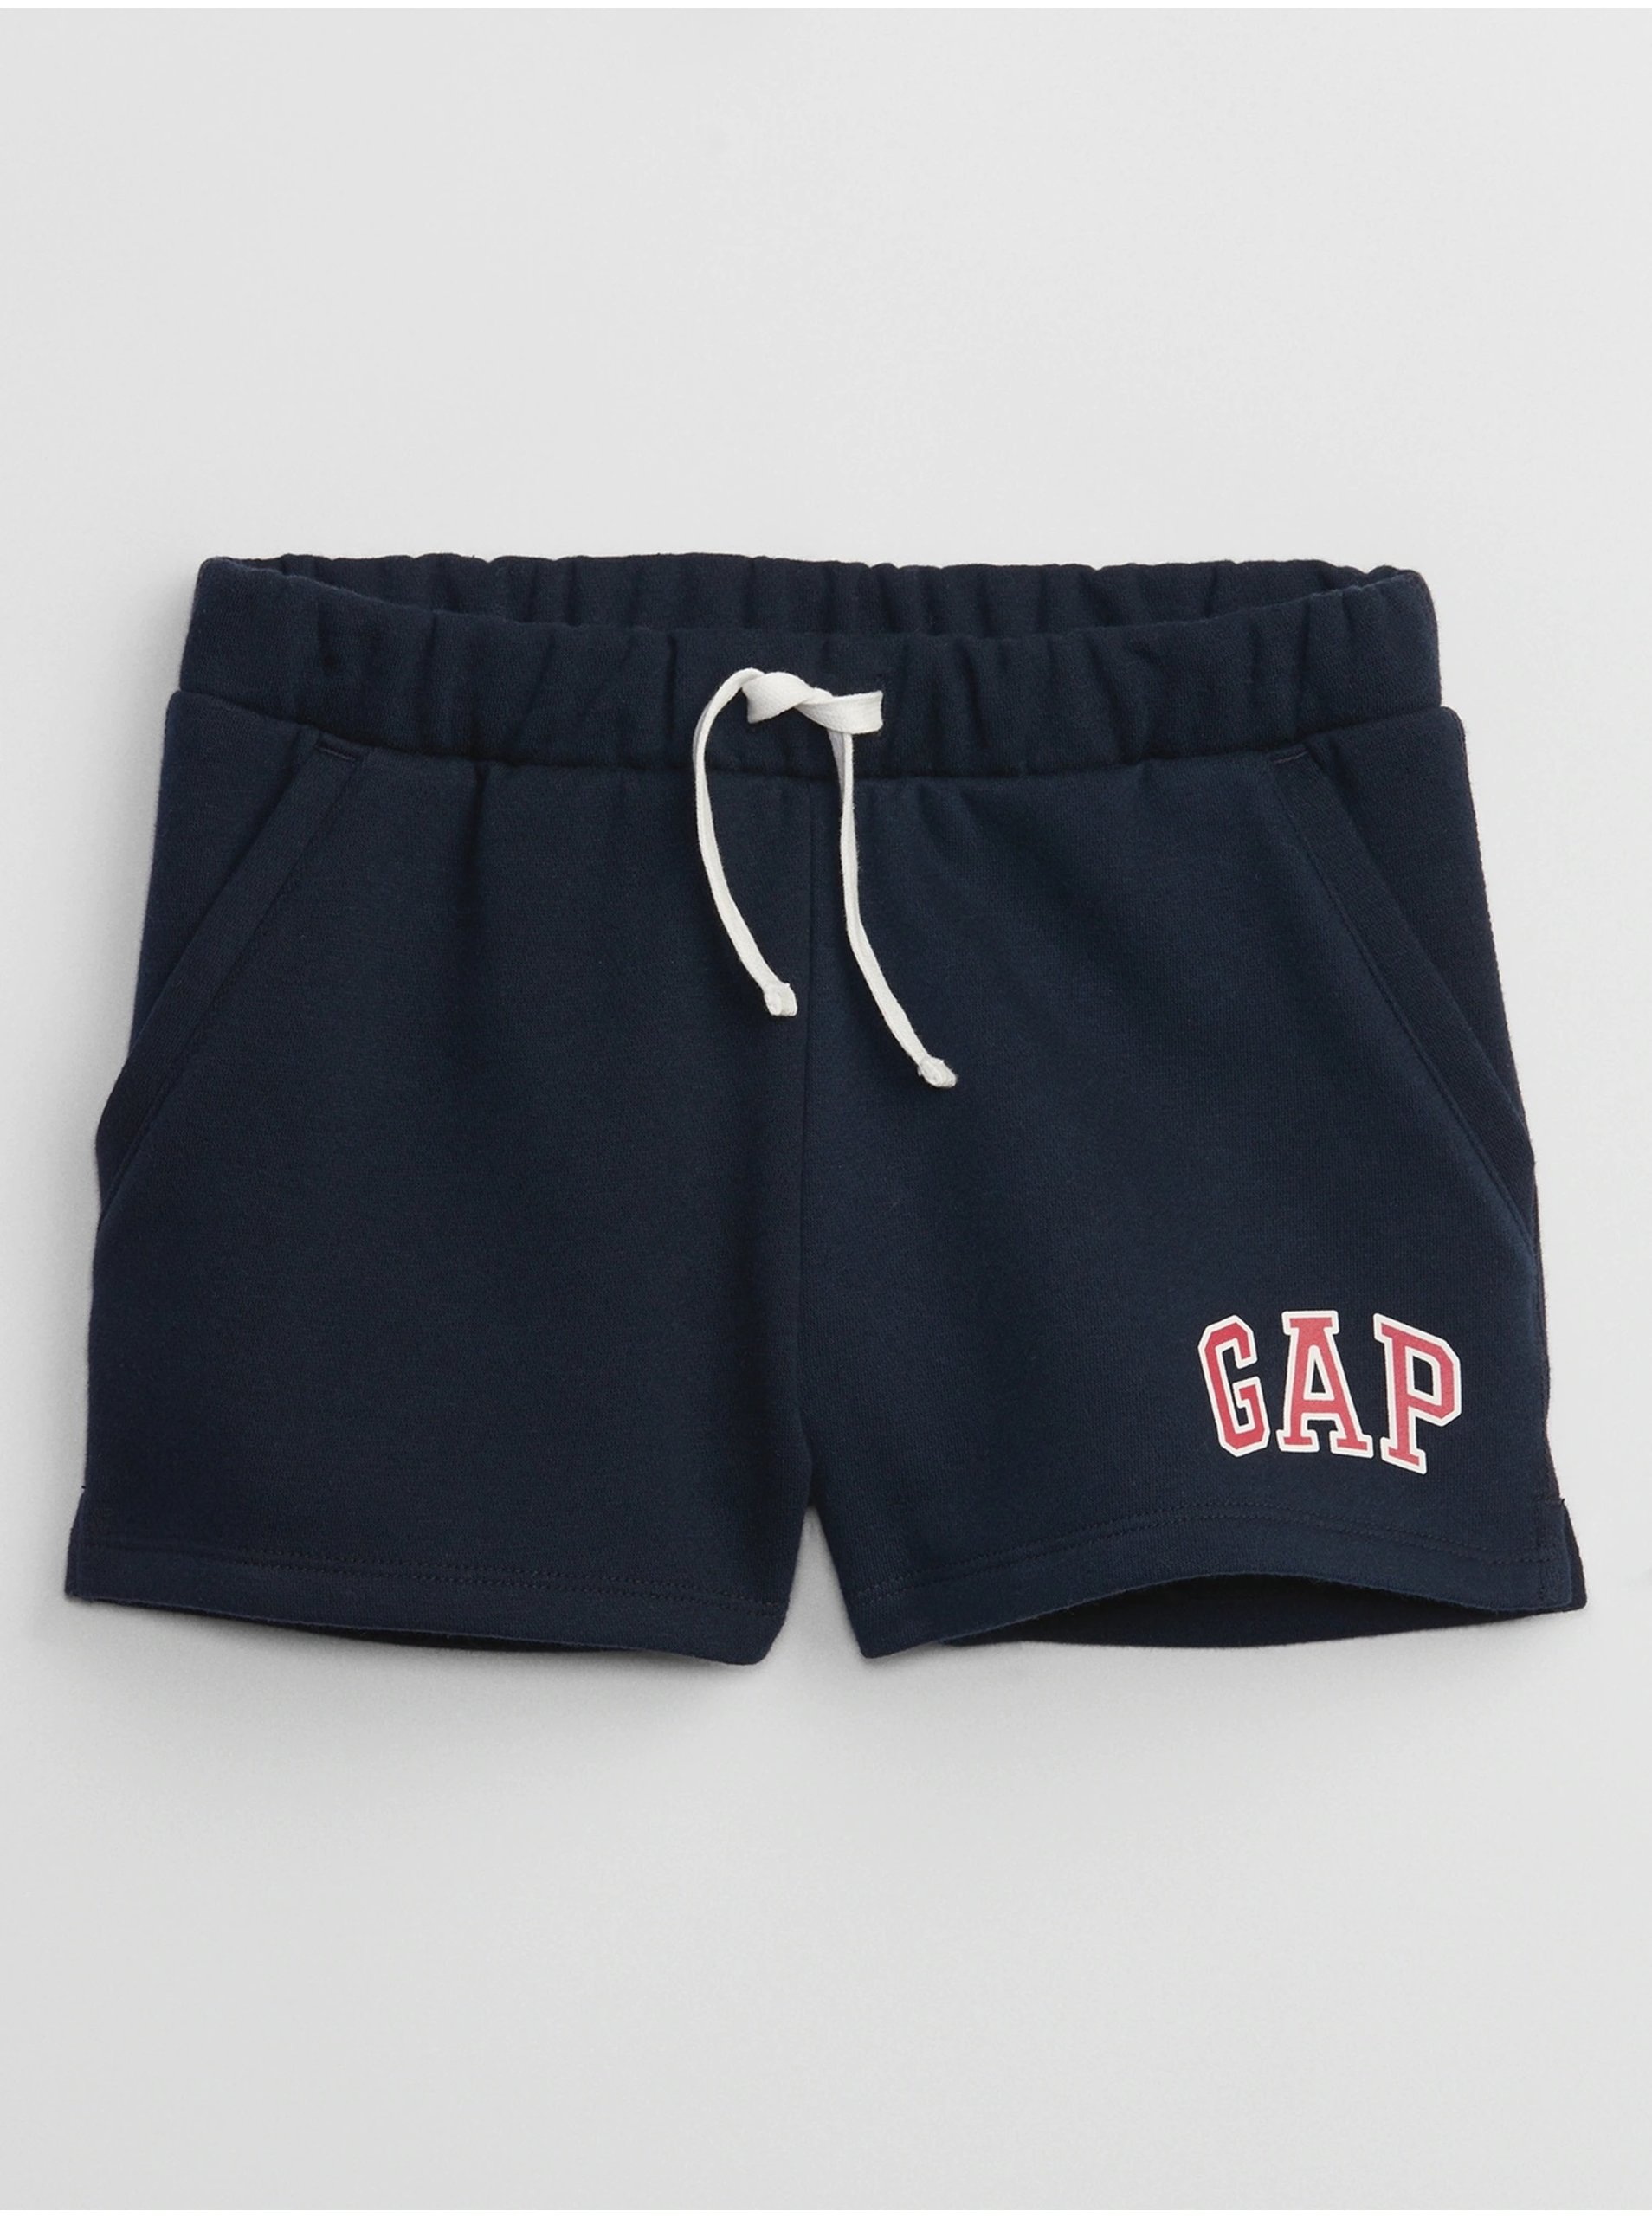 Lacno Tmavomodré dievčenské šortky s logom GAP